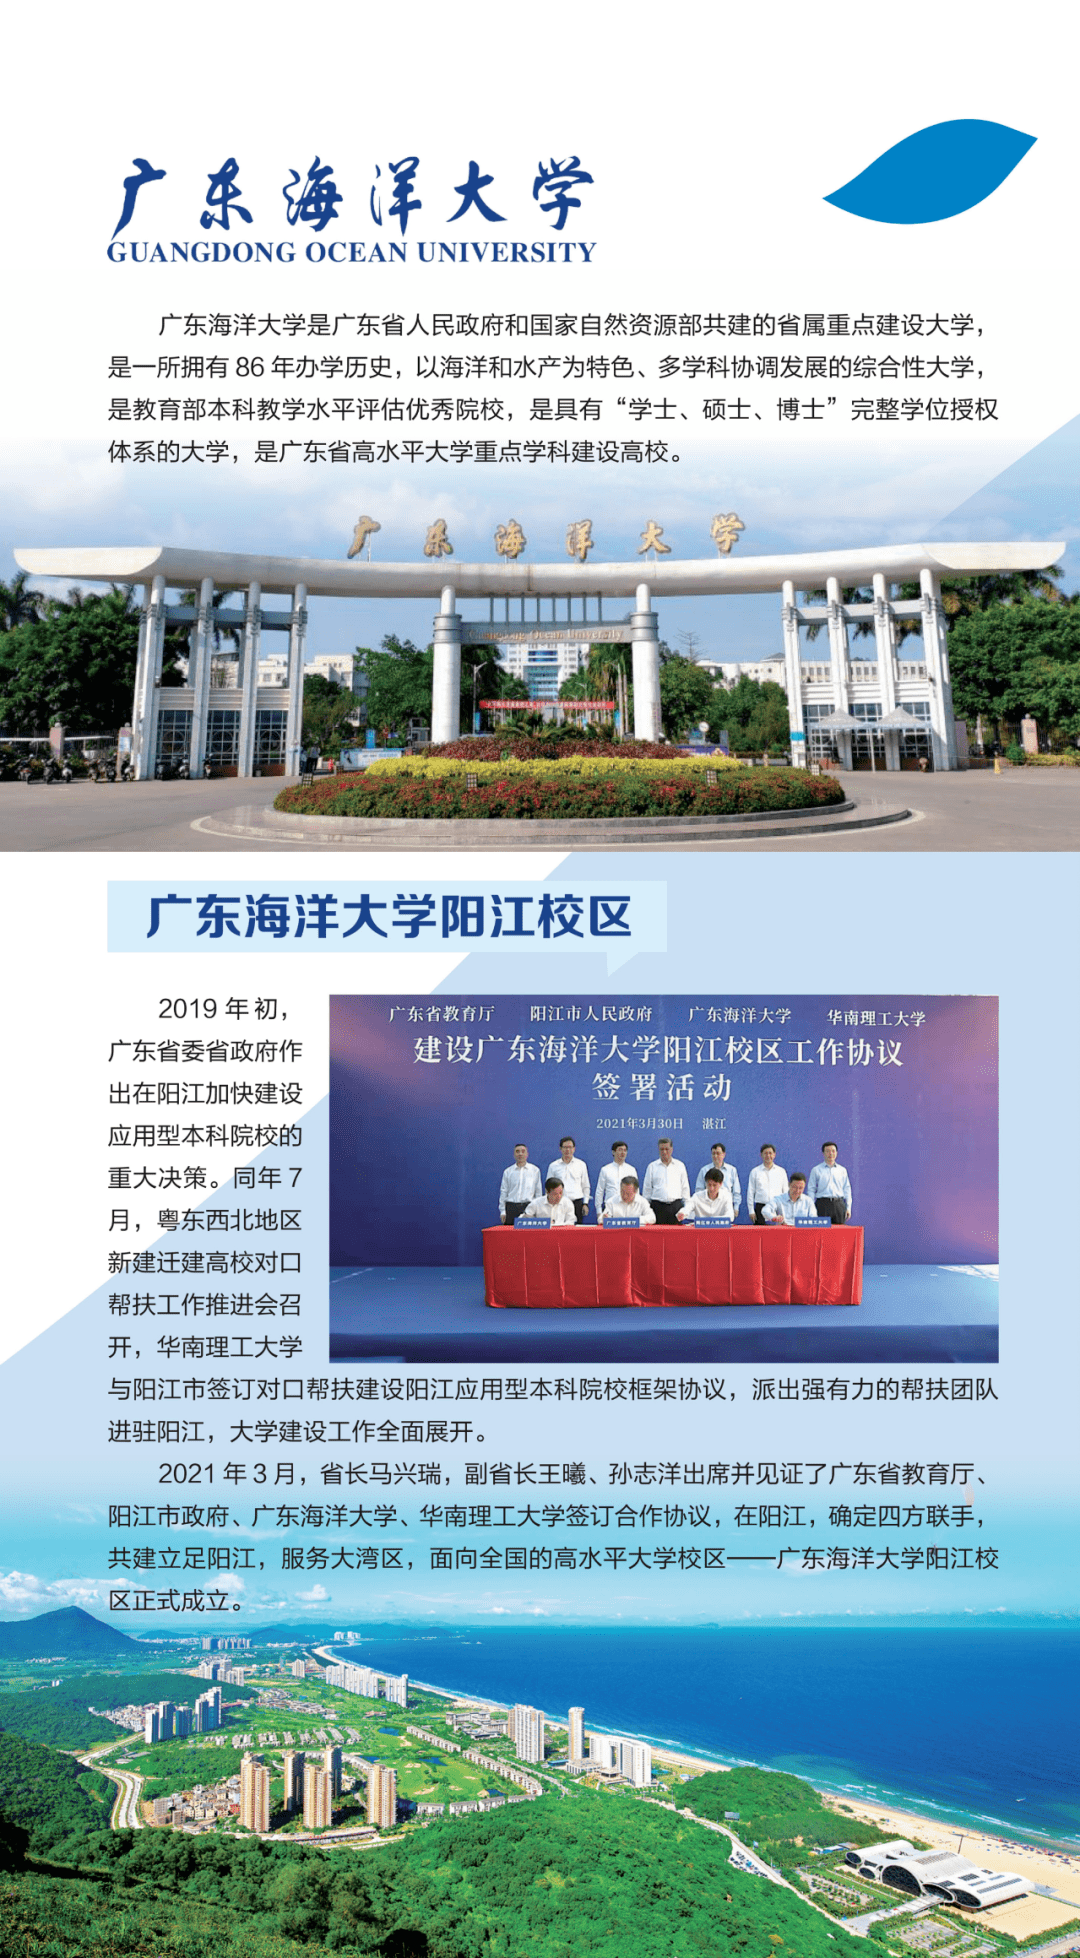 3、阳江 有哪些高校：求广东省所有高校